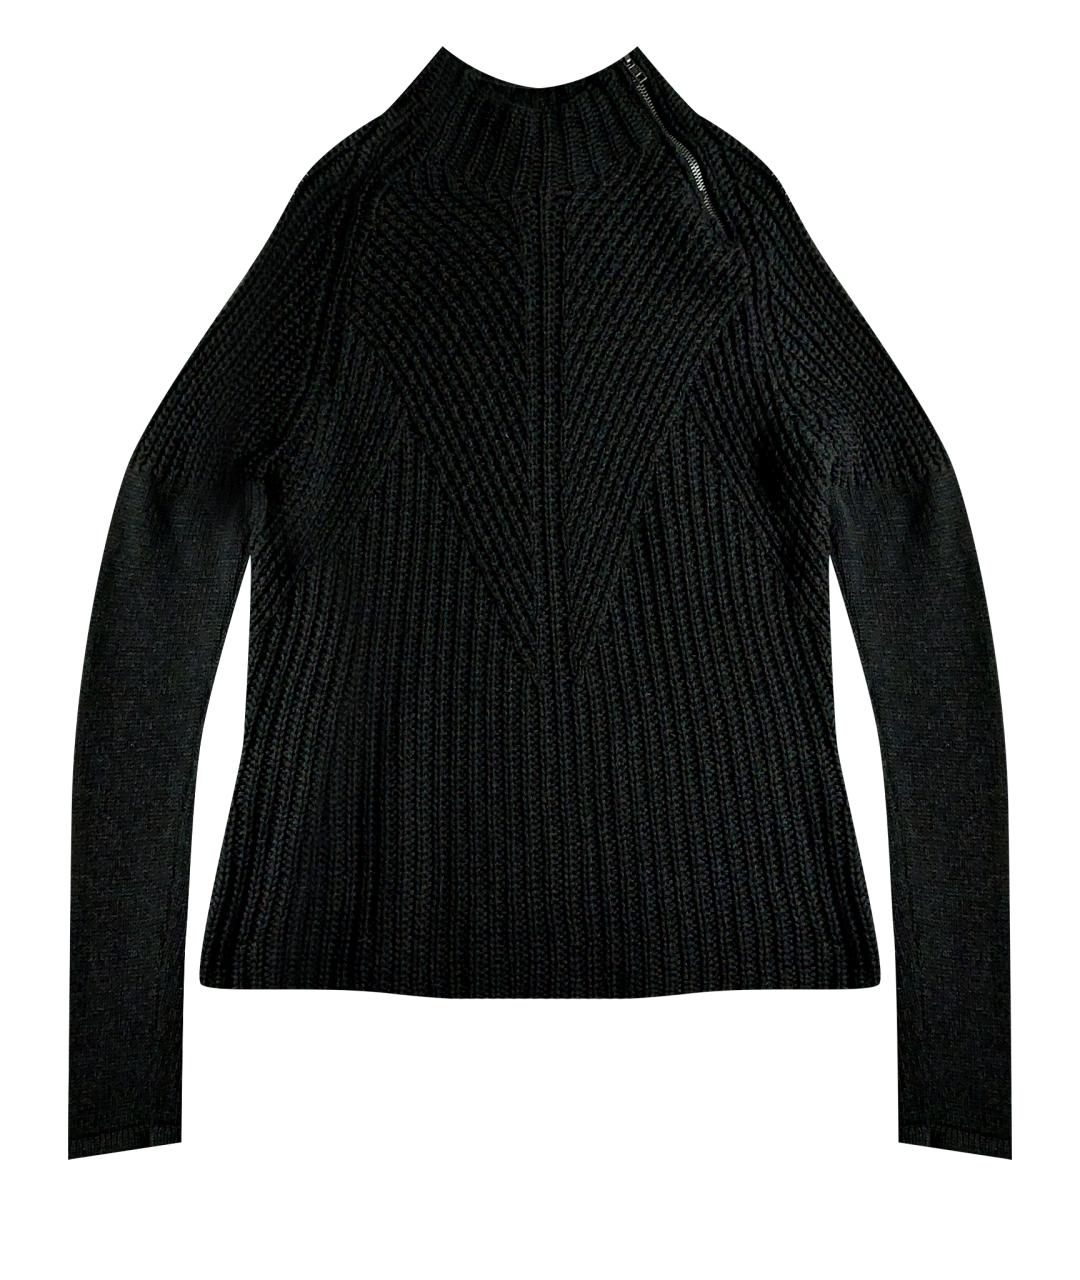 GESTUZ Антрацитовый шерстяной джемпер / свитер, фото 1